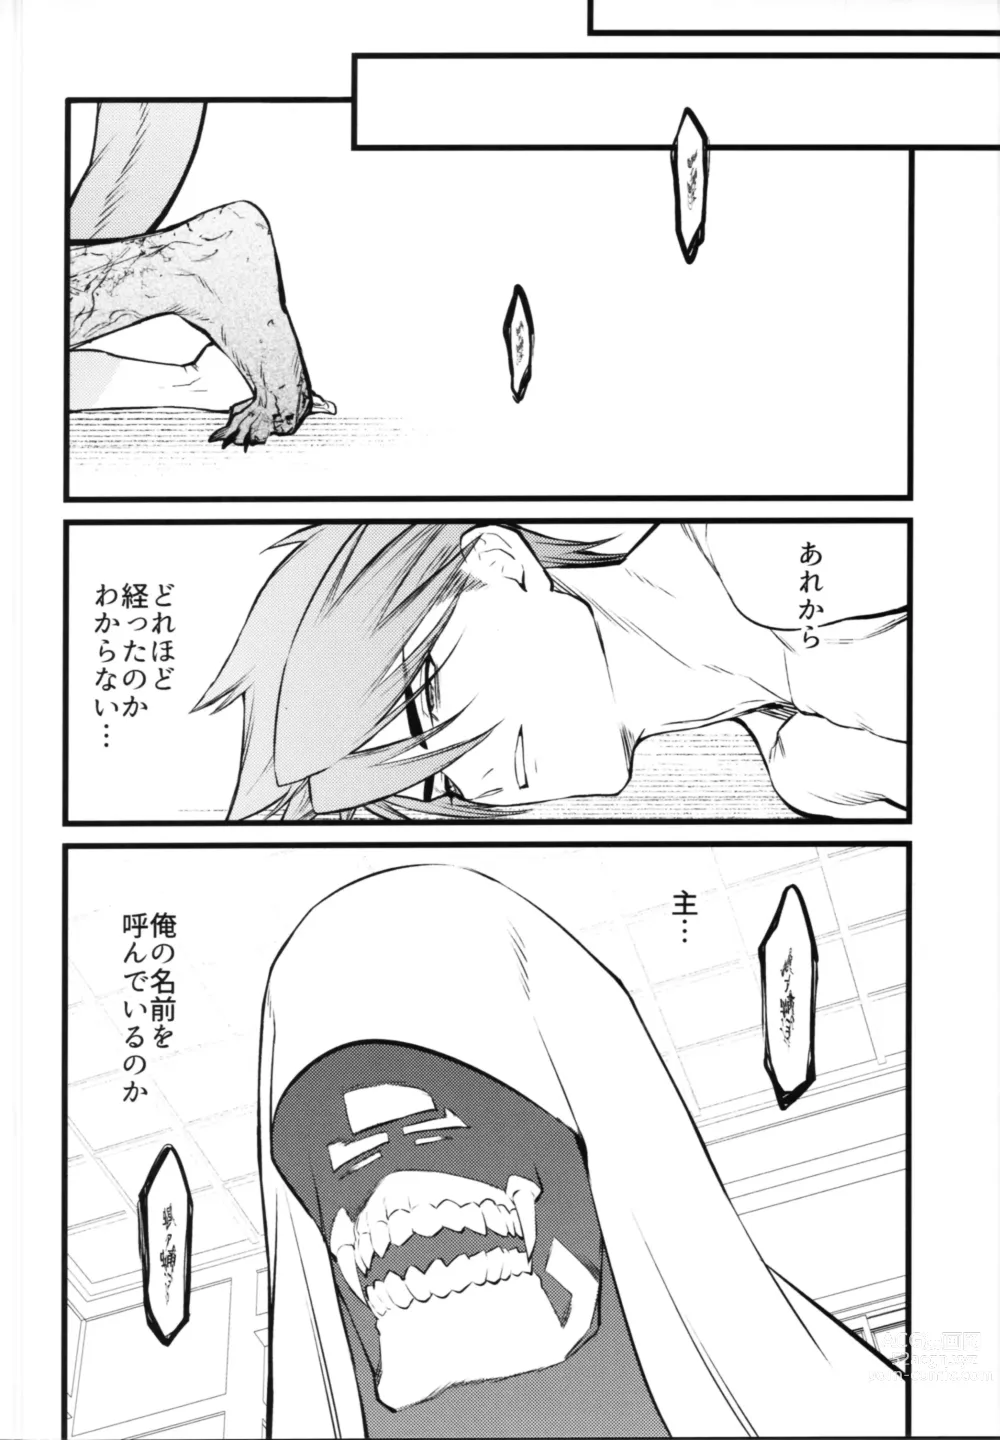 Page 25 of doujinshi Kamigakari no nagusami